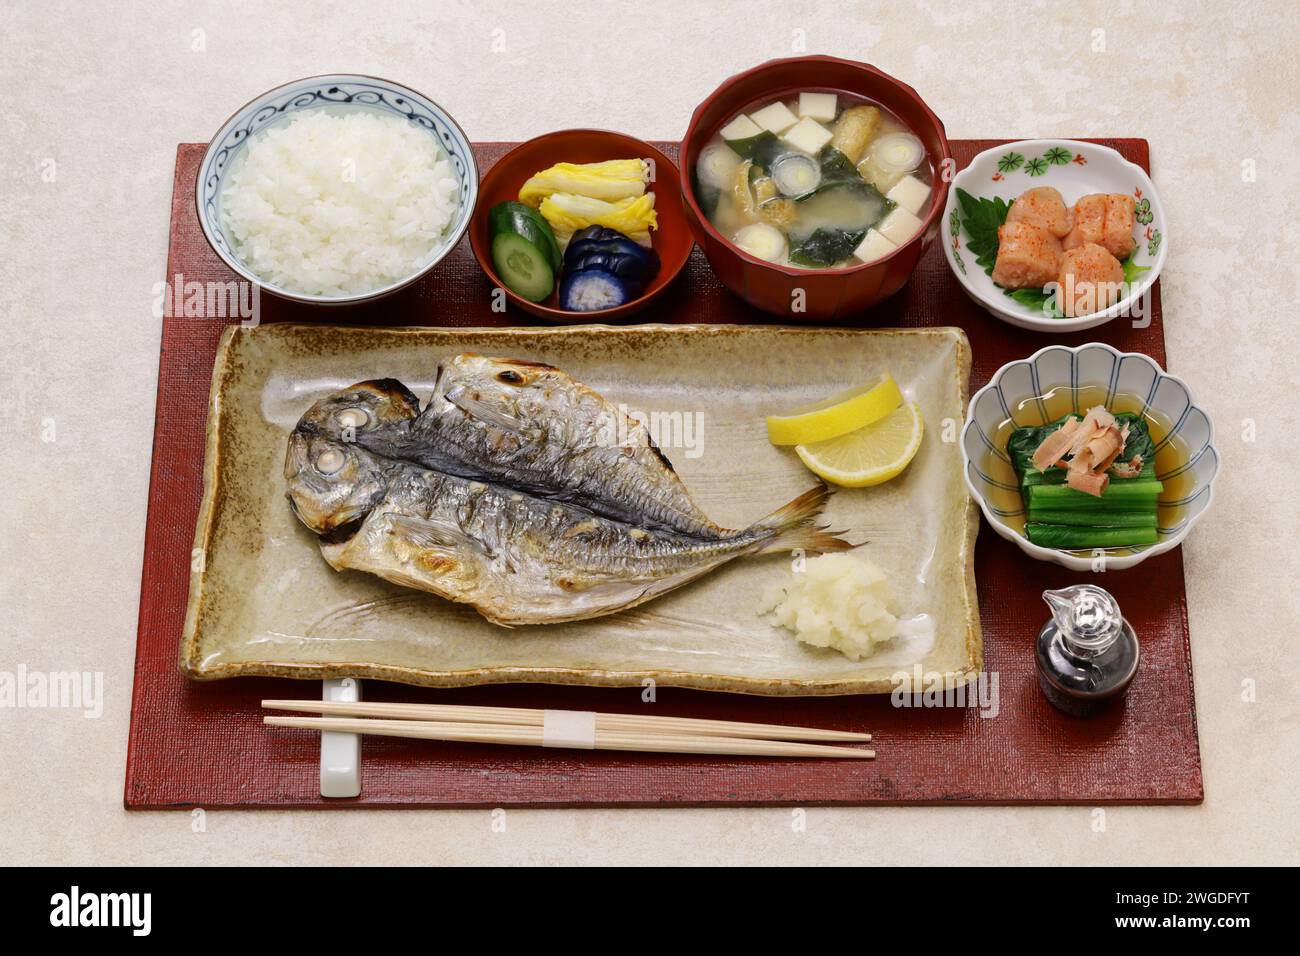 Repas de poisson grillé (chinchard semi-séché), petit-déjeuner japonais traditionnel Banque D'Images